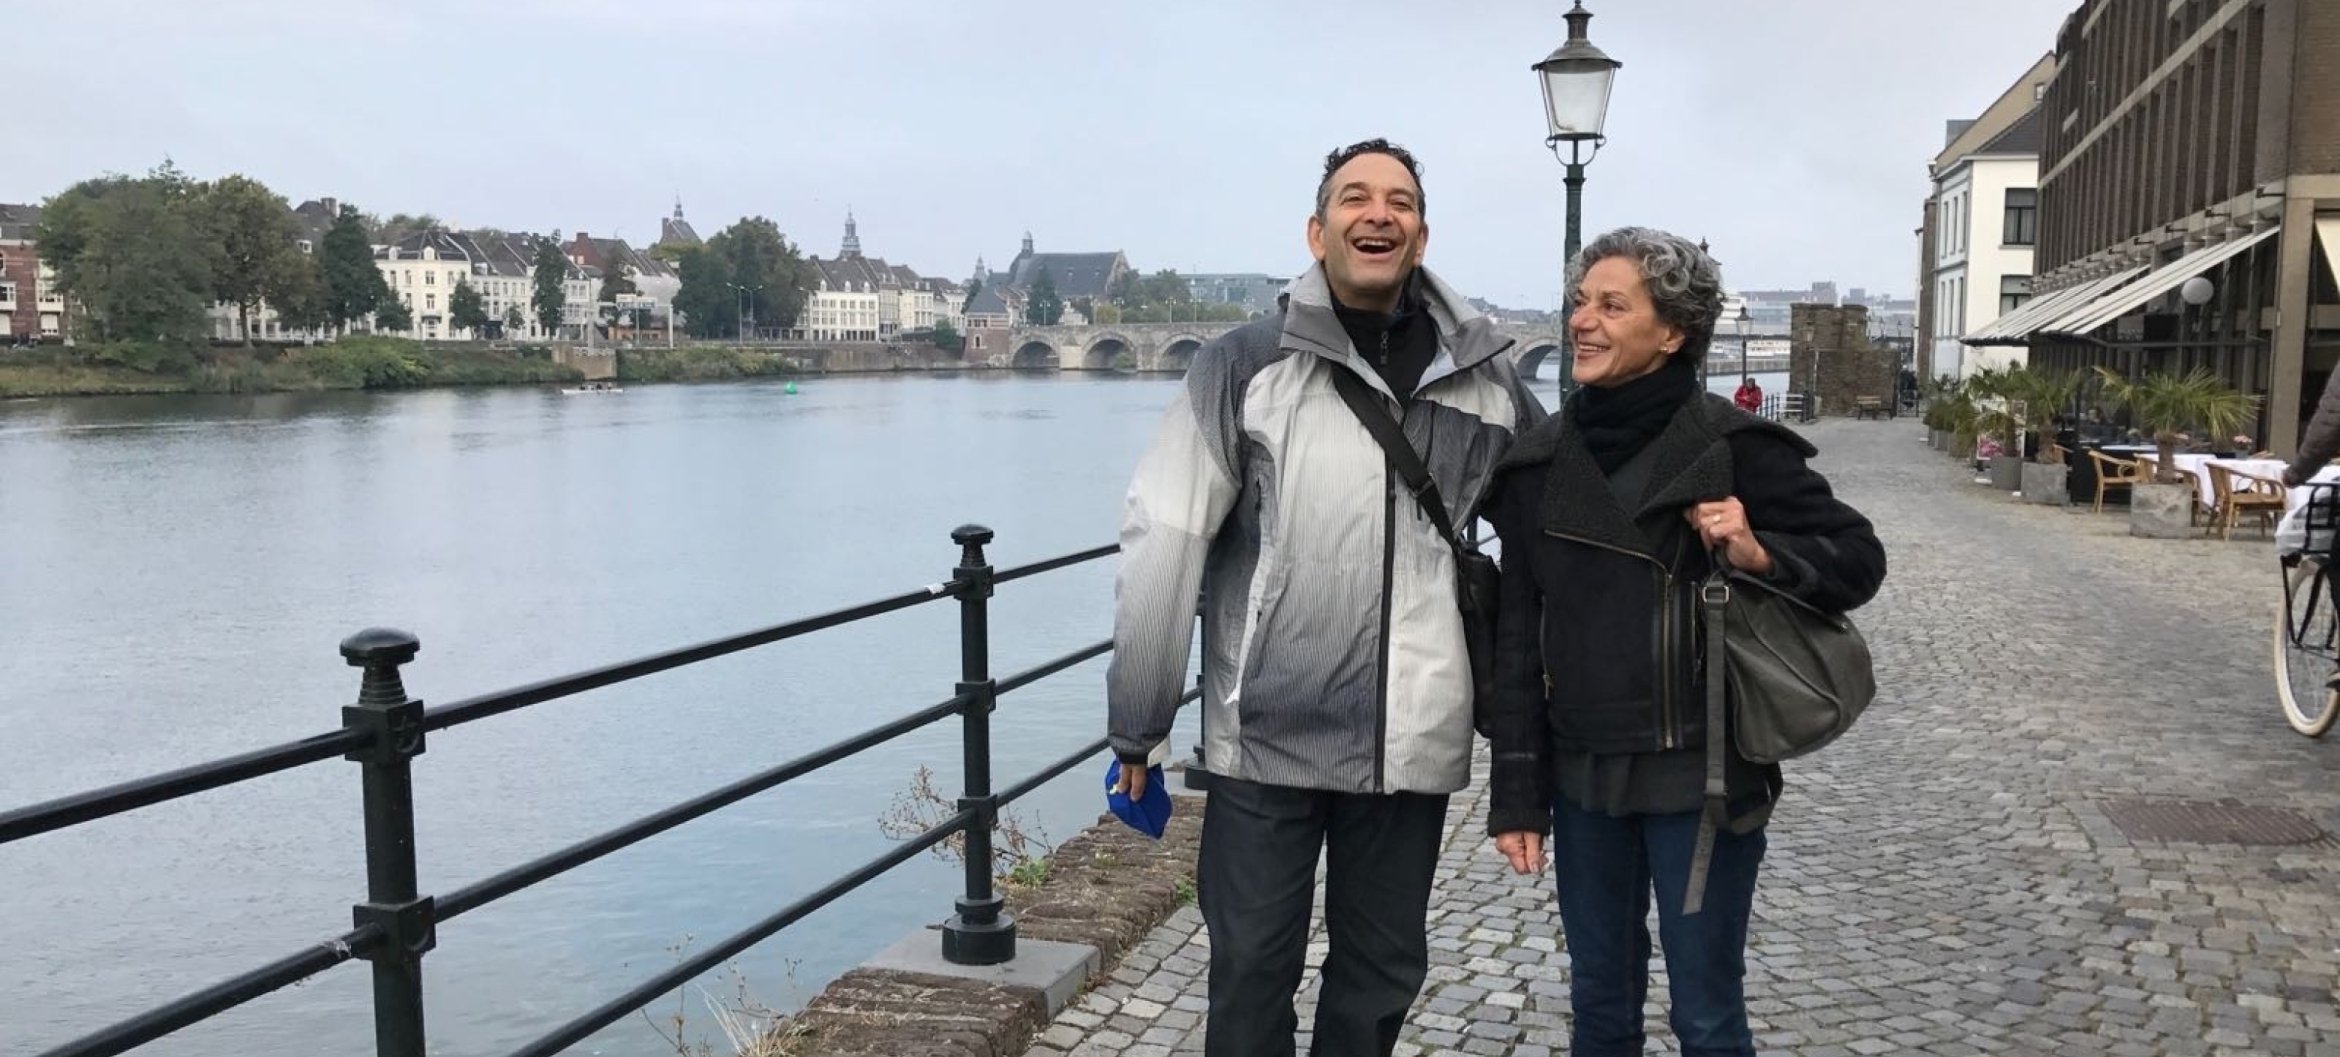 Marta geniet van Maastricht met haar collega Aryeh, op weg naar een voorstelling